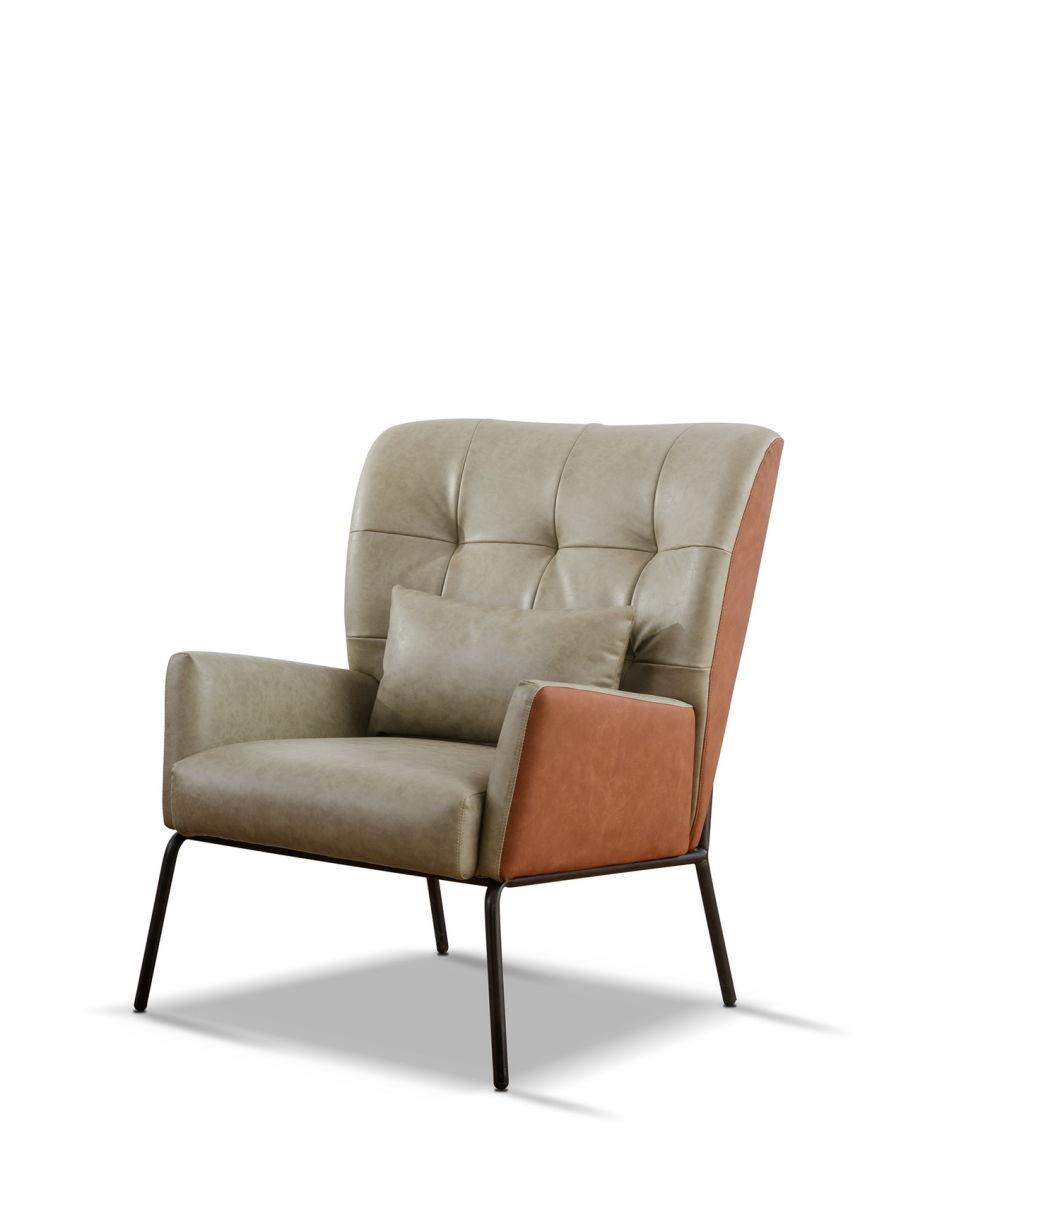 Teem Living Luxury Armchairs Sofa Chairs